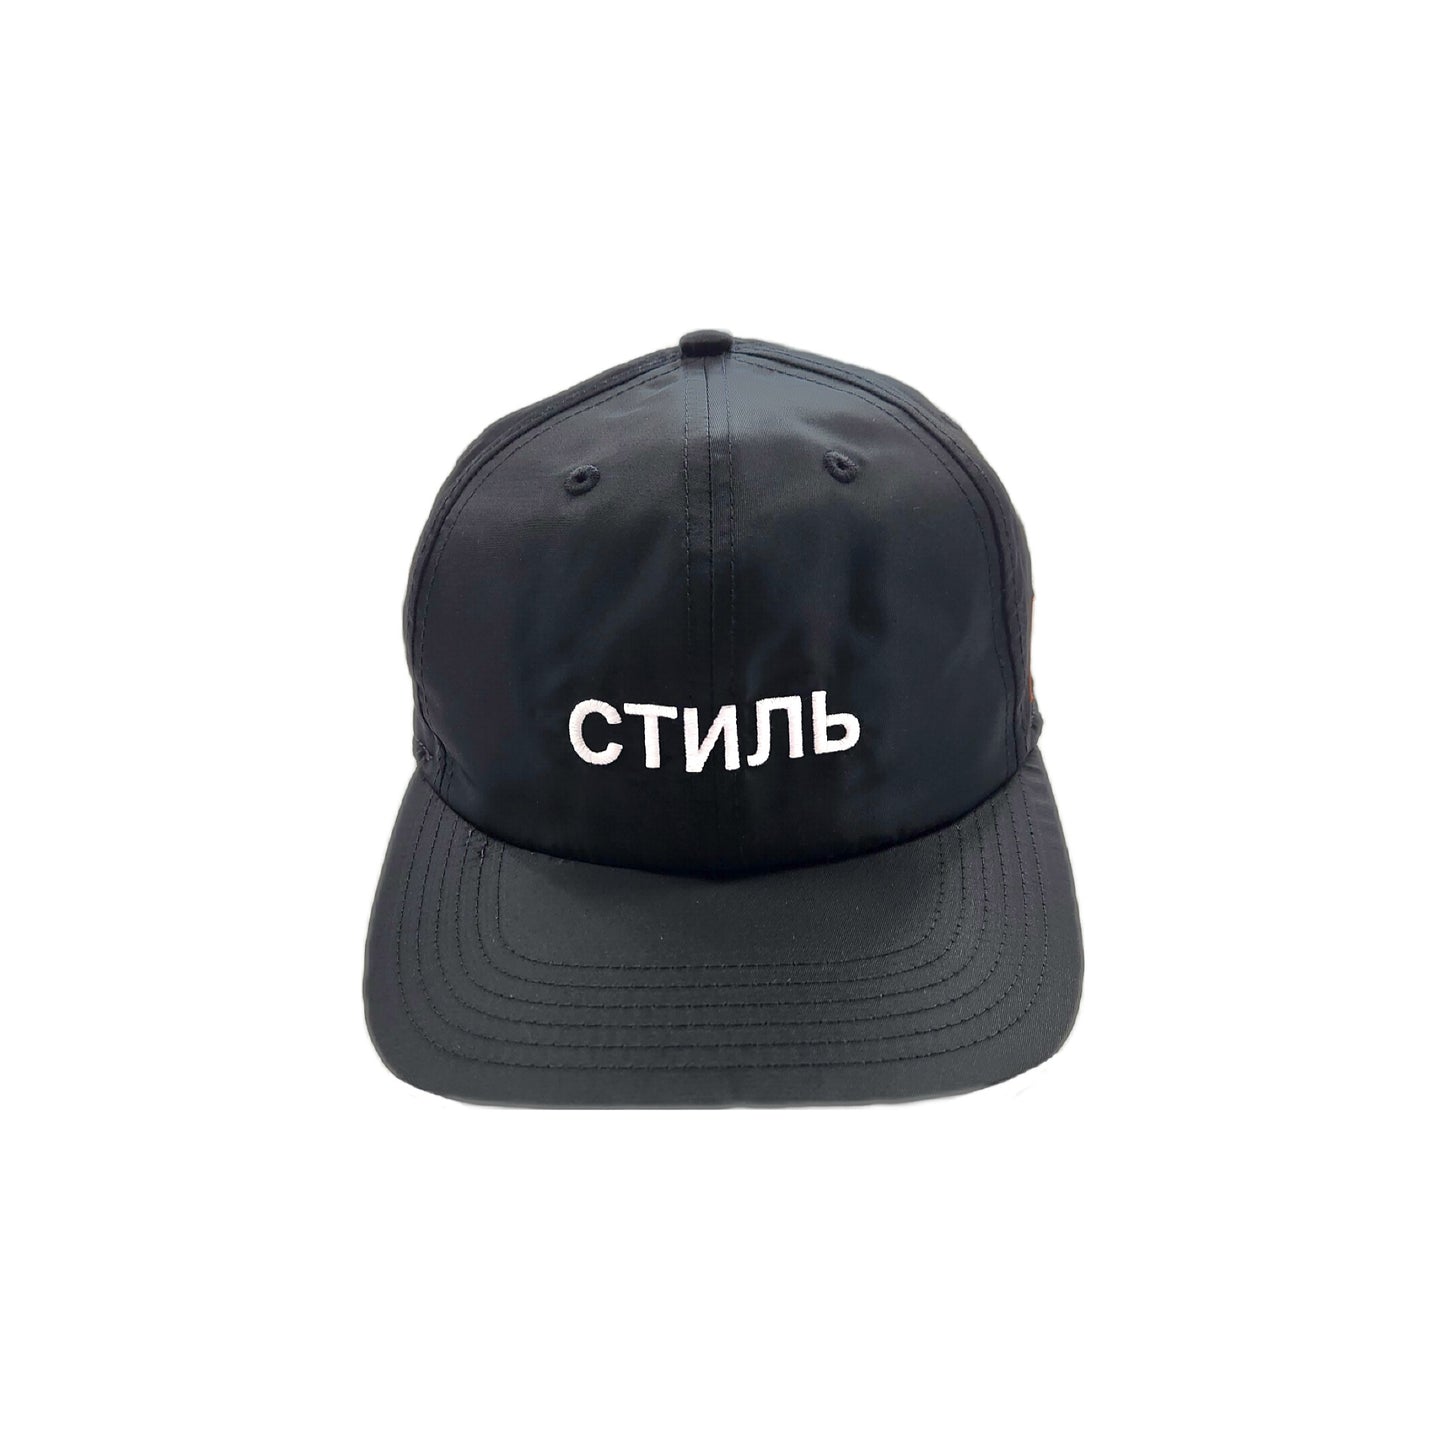 CTNMB CAP